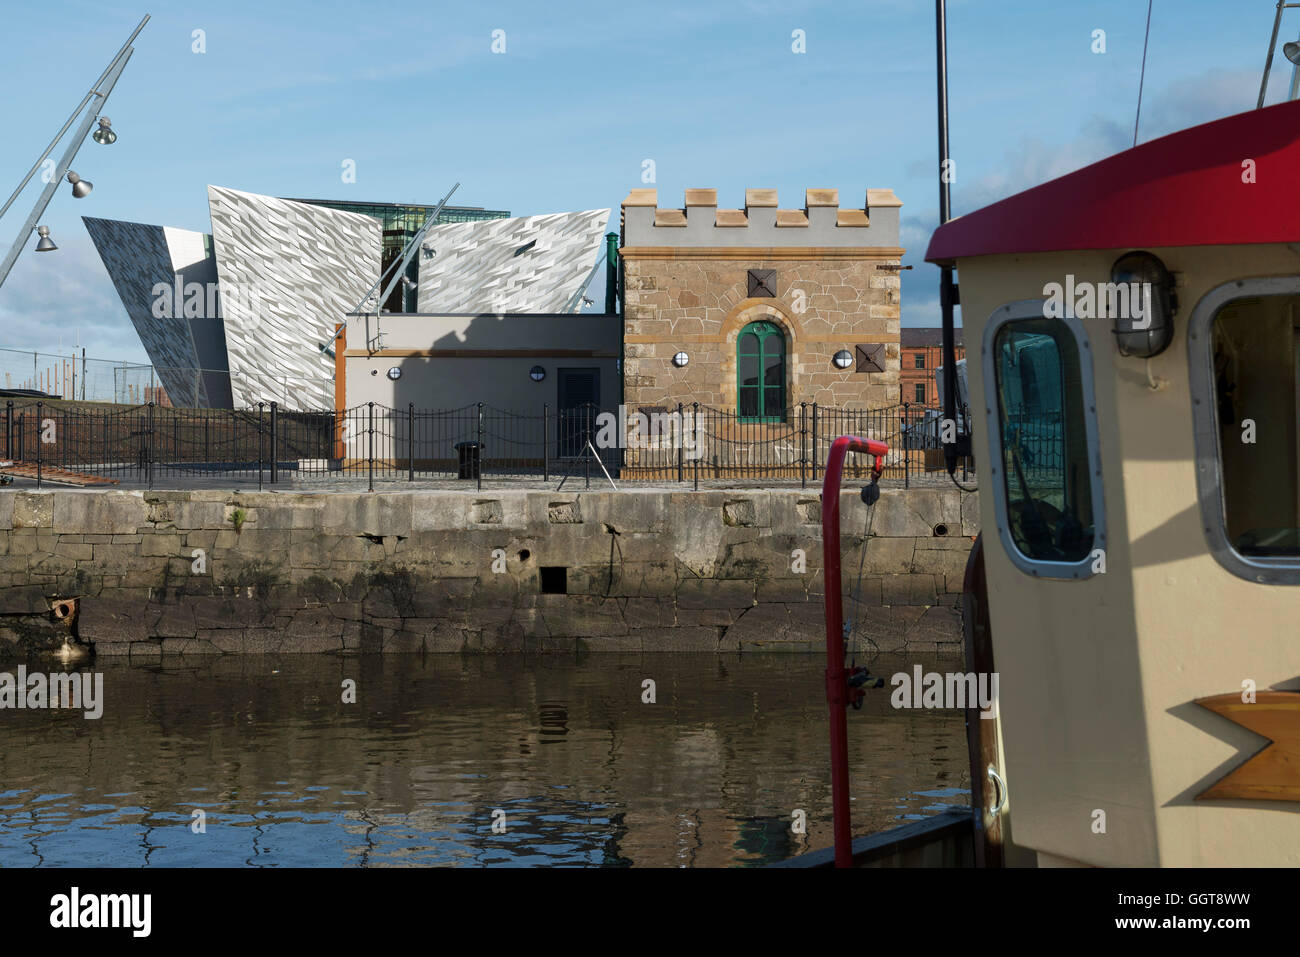 Vue sur le bâtiment Titanic avec les grues Harland et Wolff, Belfast Banque D'Images